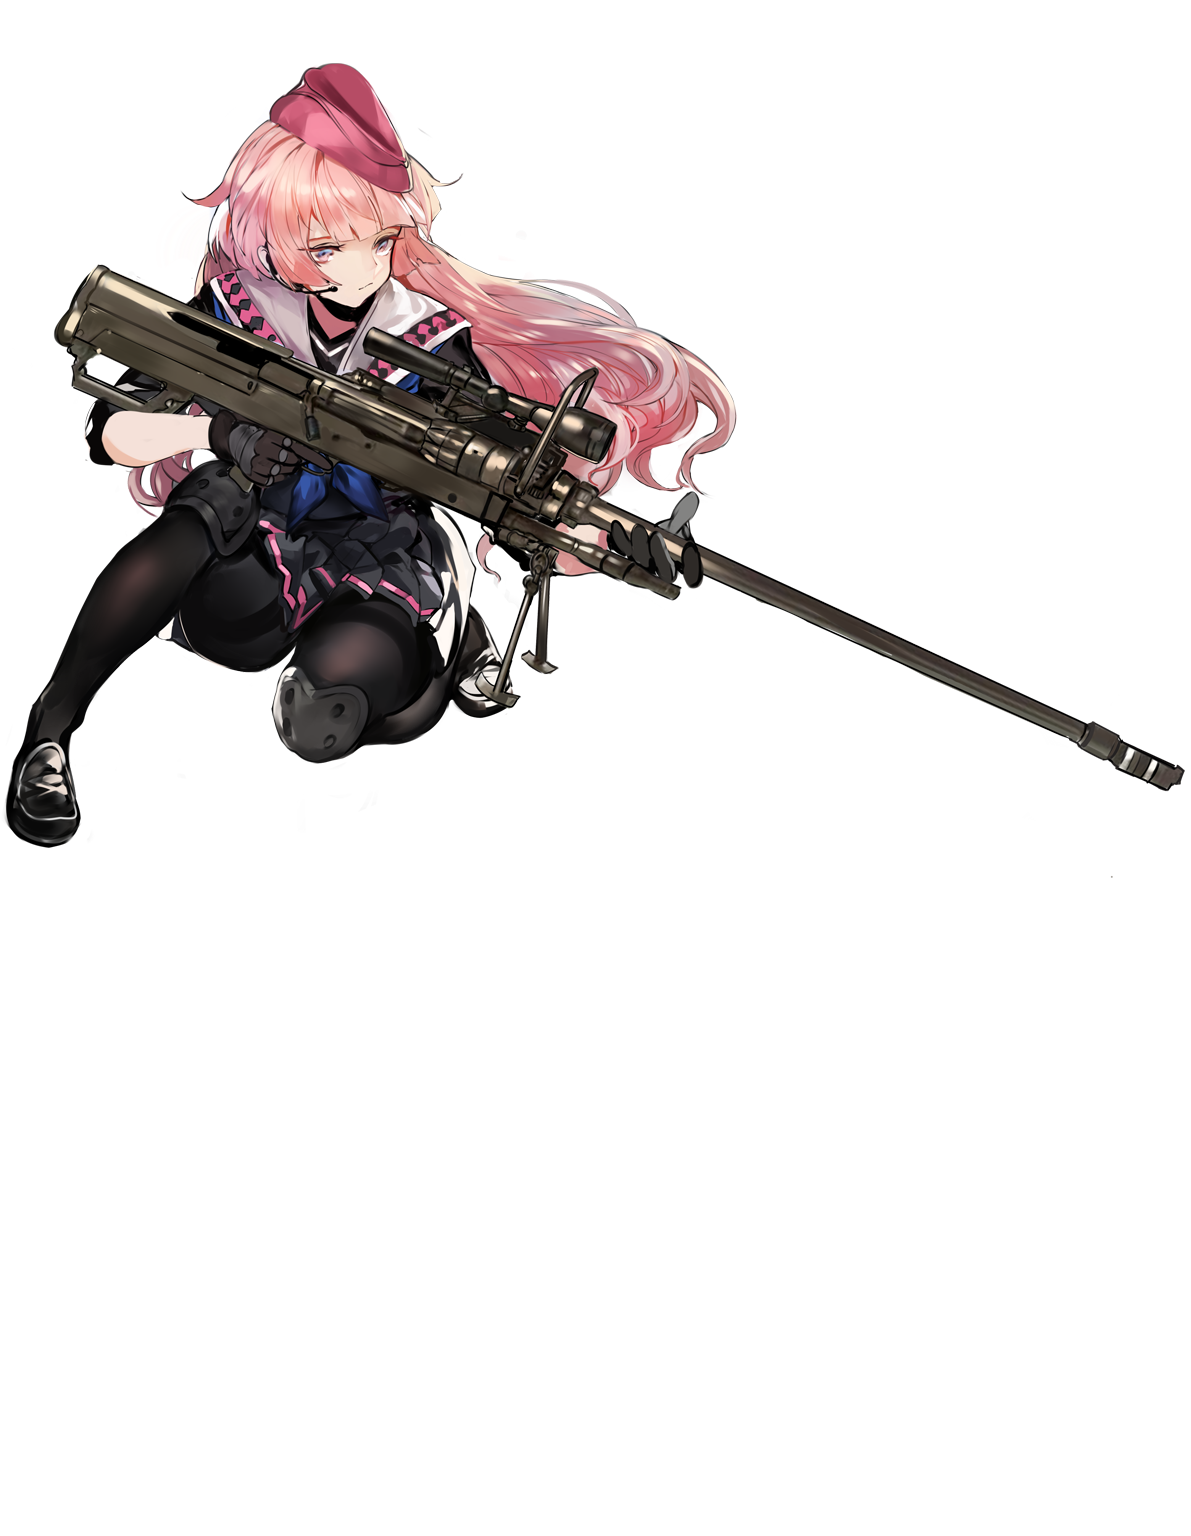 NTW-20狙擊步槍(手遊《少女前線》登場角色)